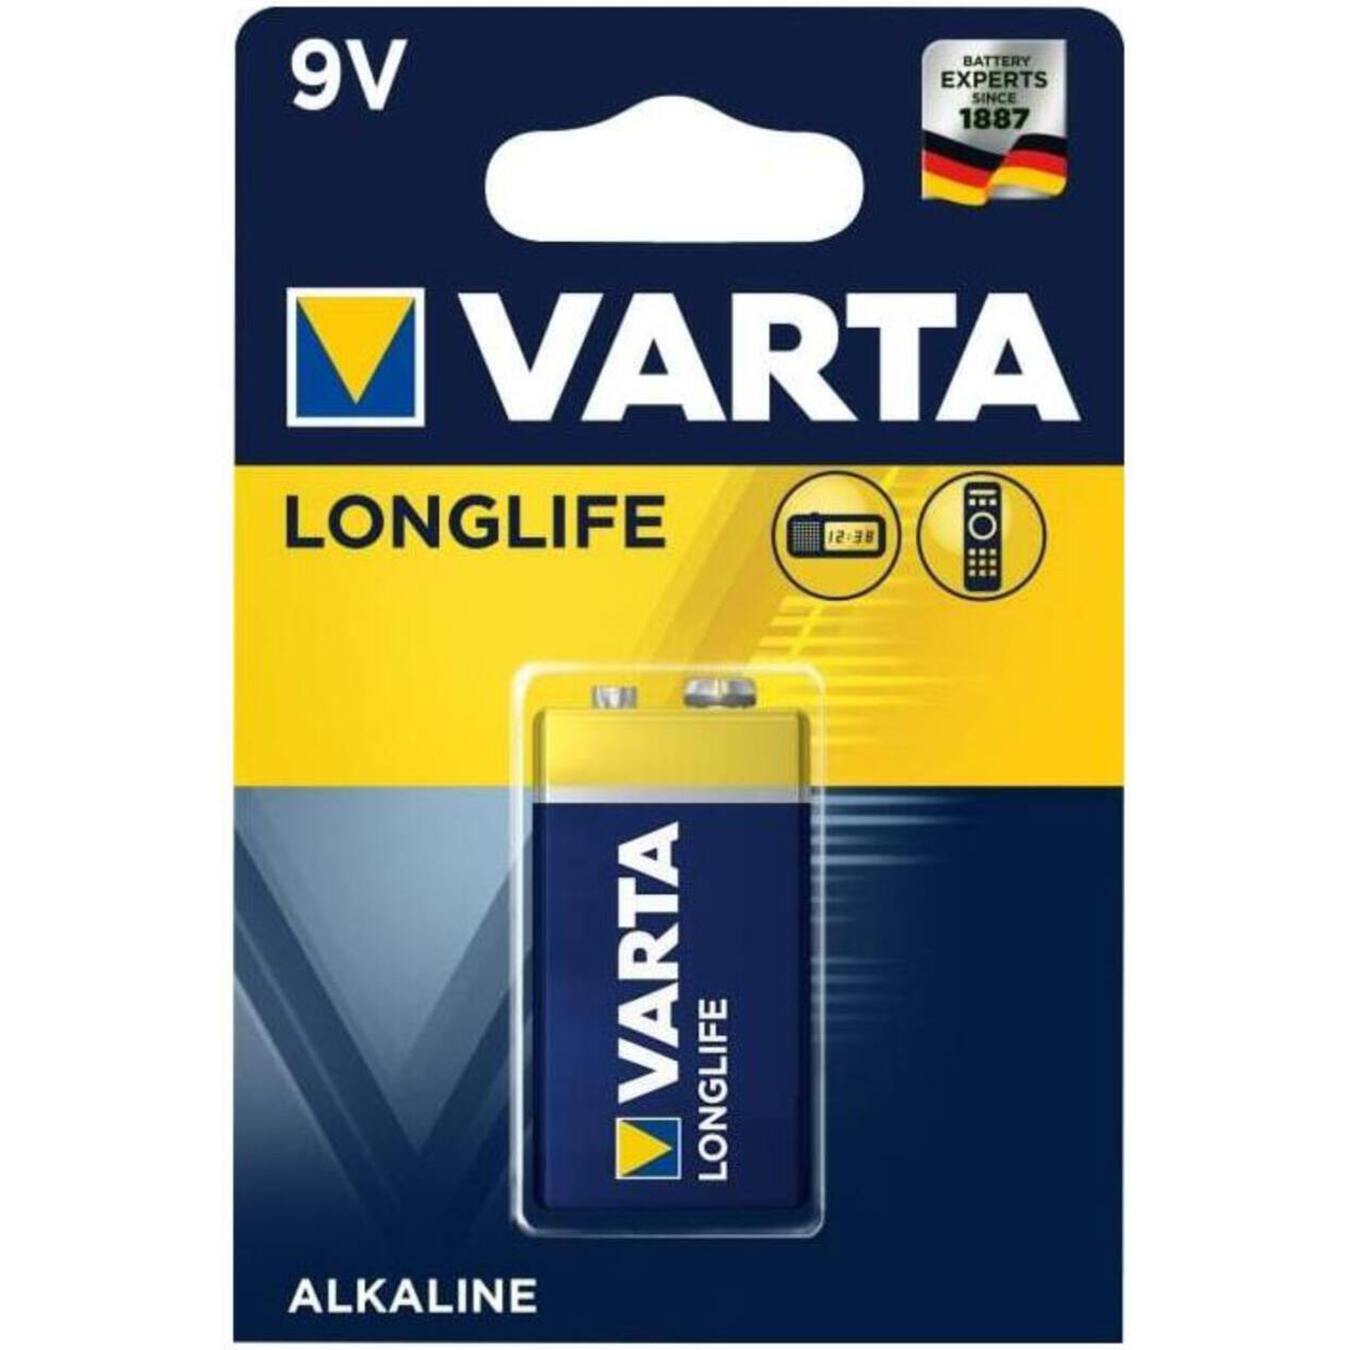 Varta Longlife 1 x 9V  Battery Alkaline